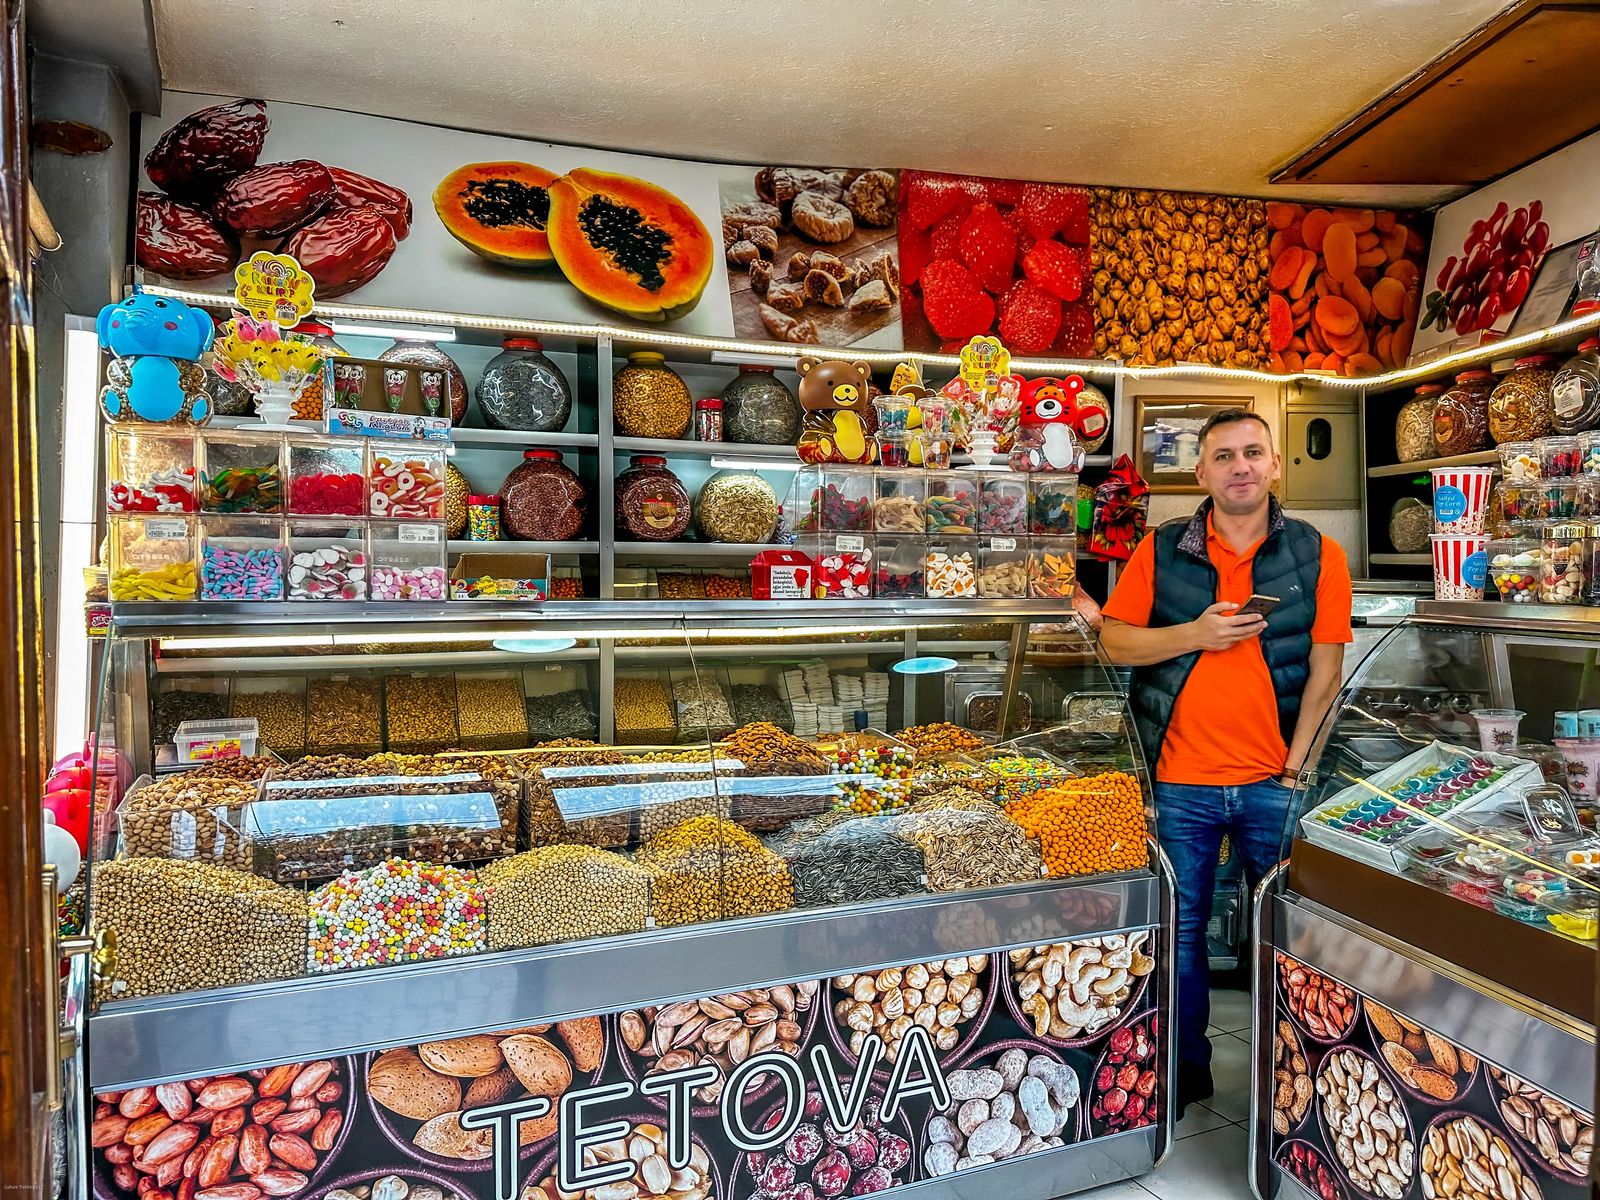 Tetovo Sweet Shop in Prizren Kosovo